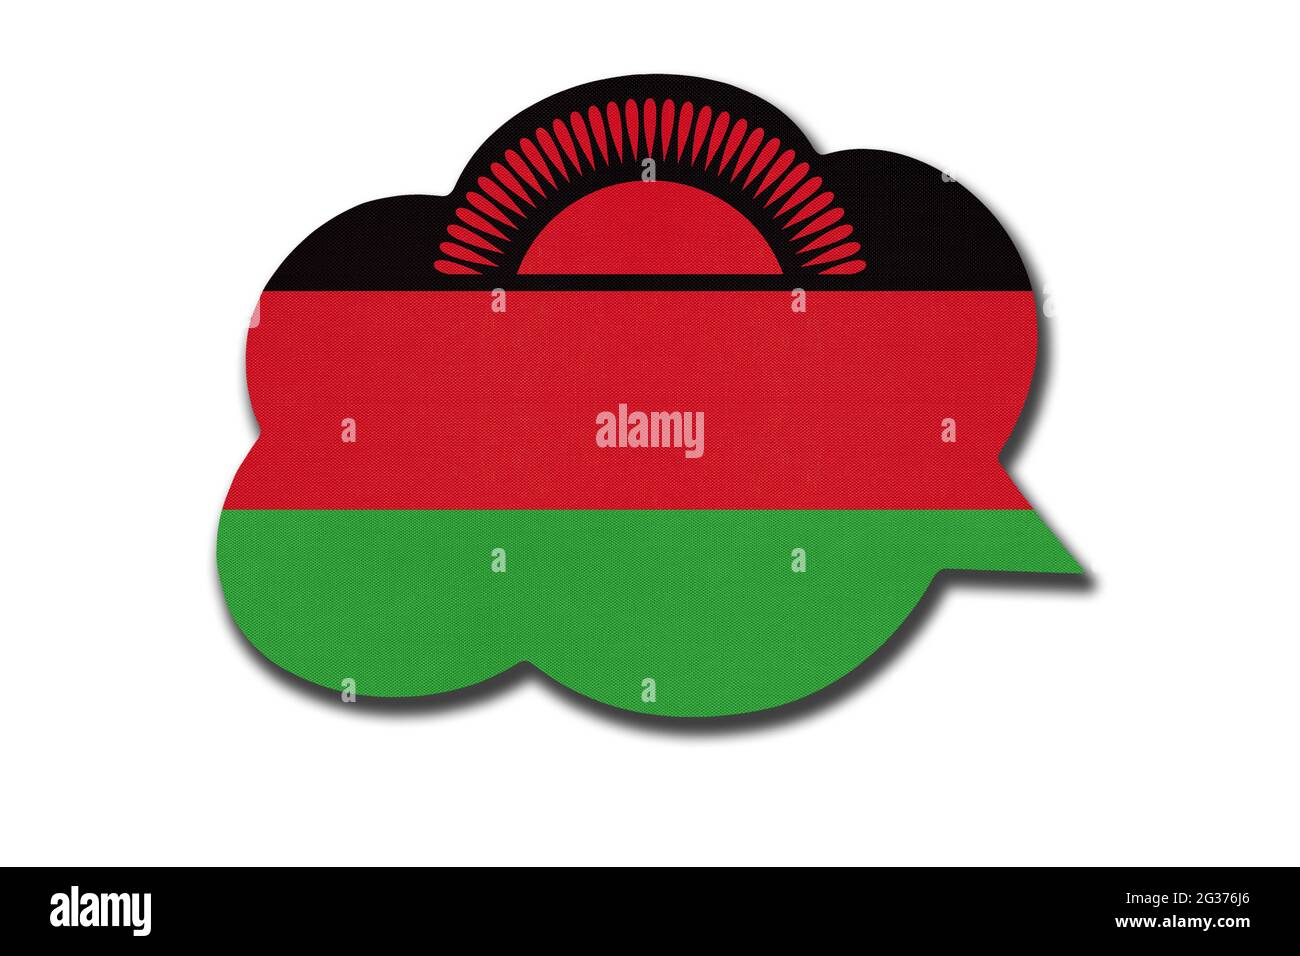 3d-Sprechblase mit malawiischer Nationalflagge auf weißem Hintergrund isoliert. Symbol des Landes Malawi. Weltkommunikationszeichen. Stockfoto